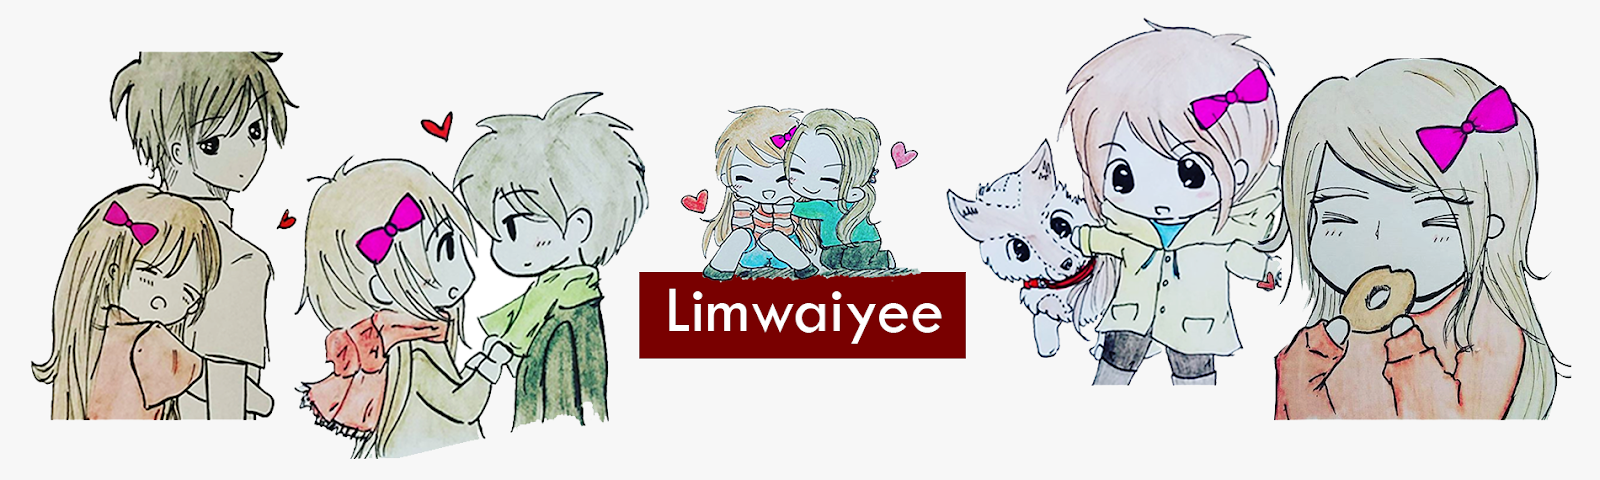 Limwaiyee